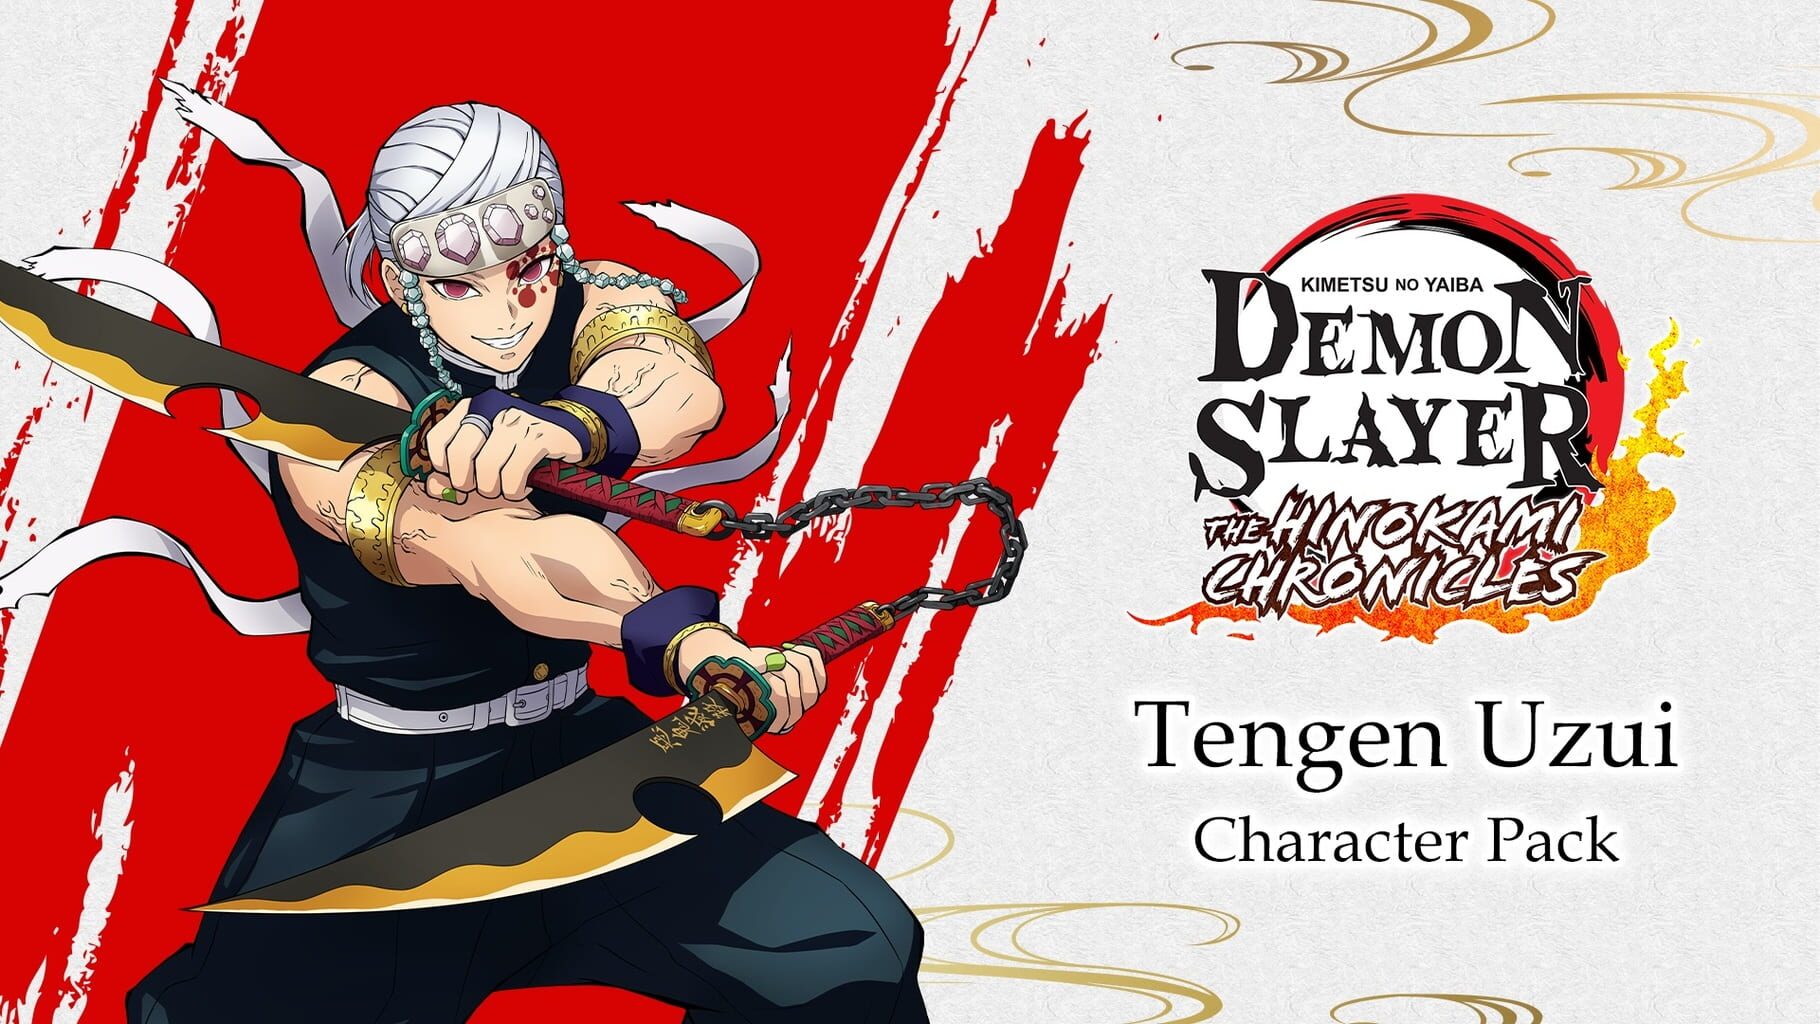 Demon Slayer -Kimetsu no Yaiba- The Hinokami Chronicles: Tengen Uzui Character Pack artwork